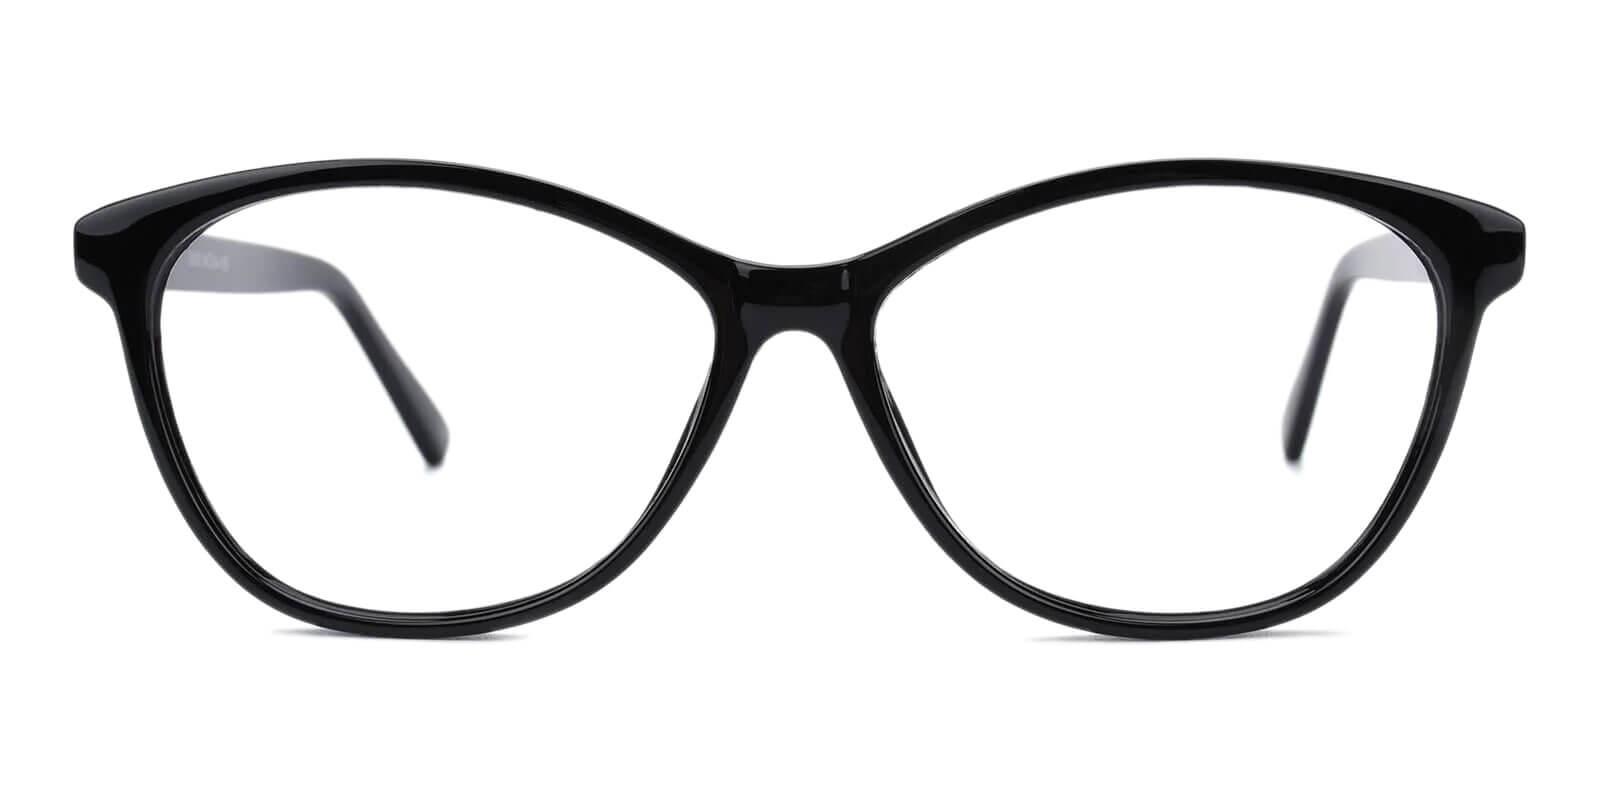 Lightworks Black Plastic Eyeglasses , UniversalBridgeFit Frames from ABBE Glasses